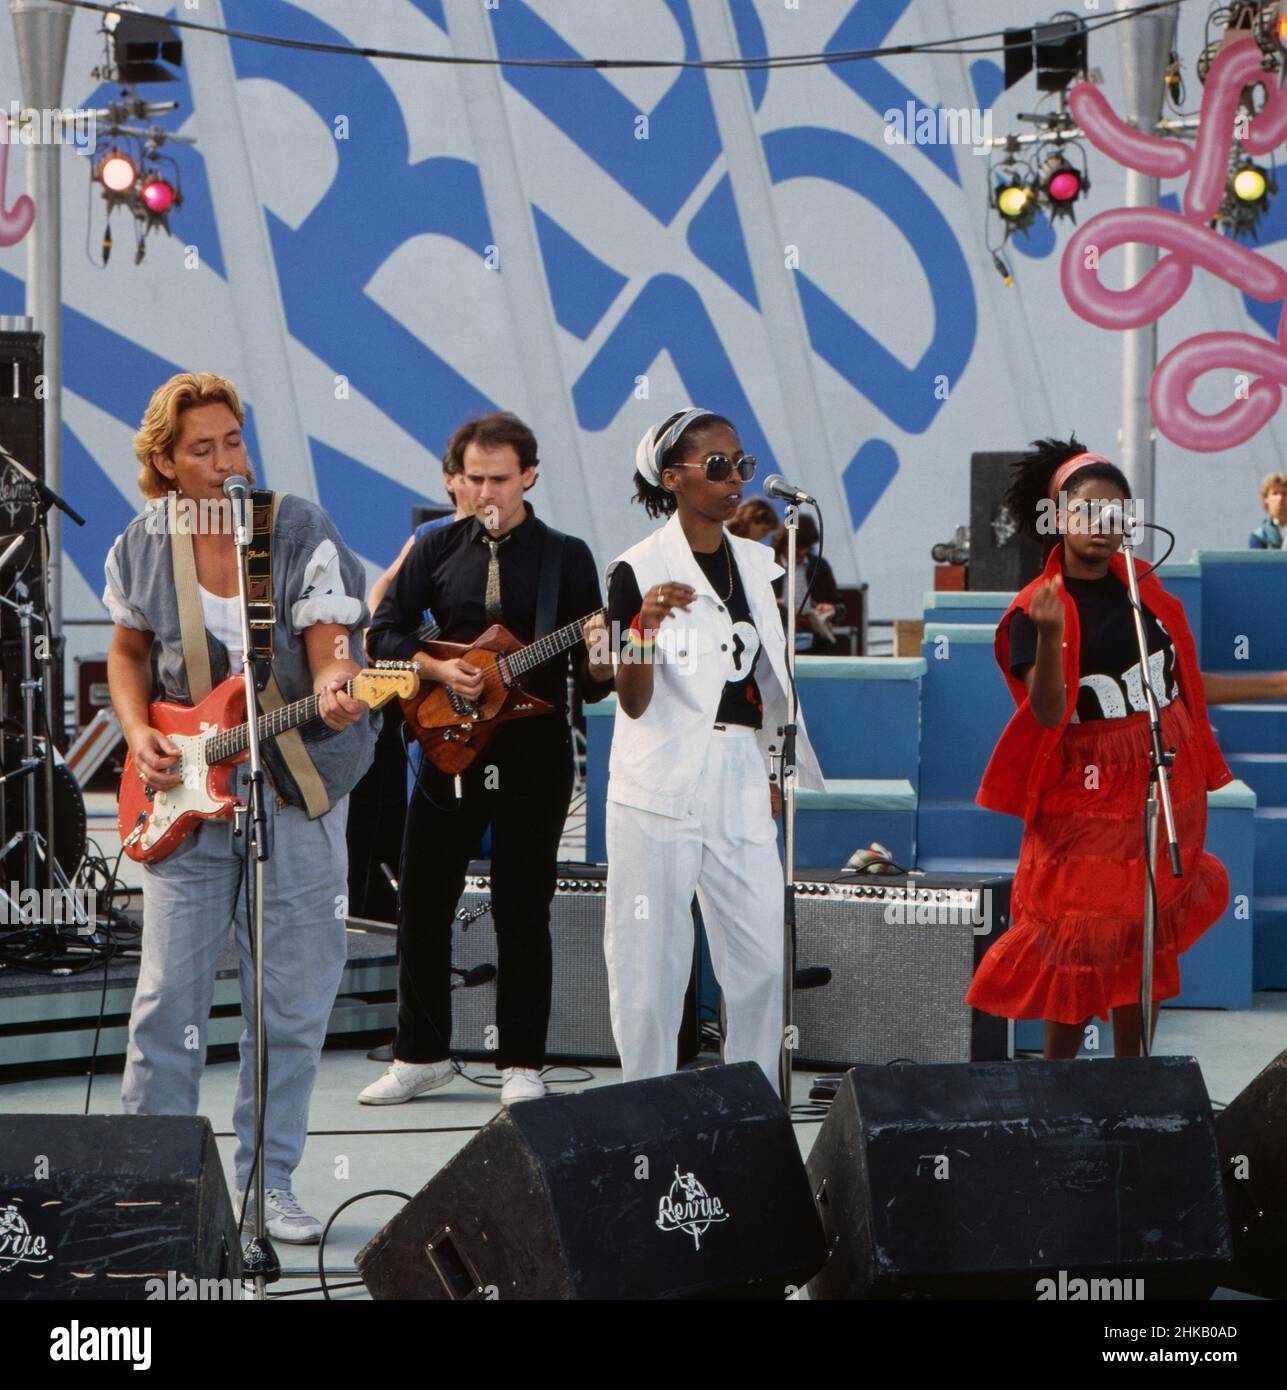 Chris Rea, britischer Sänger, Komponist und Gitarrist, bei einem Auftritt, Deutschland 1983. Stock Photo